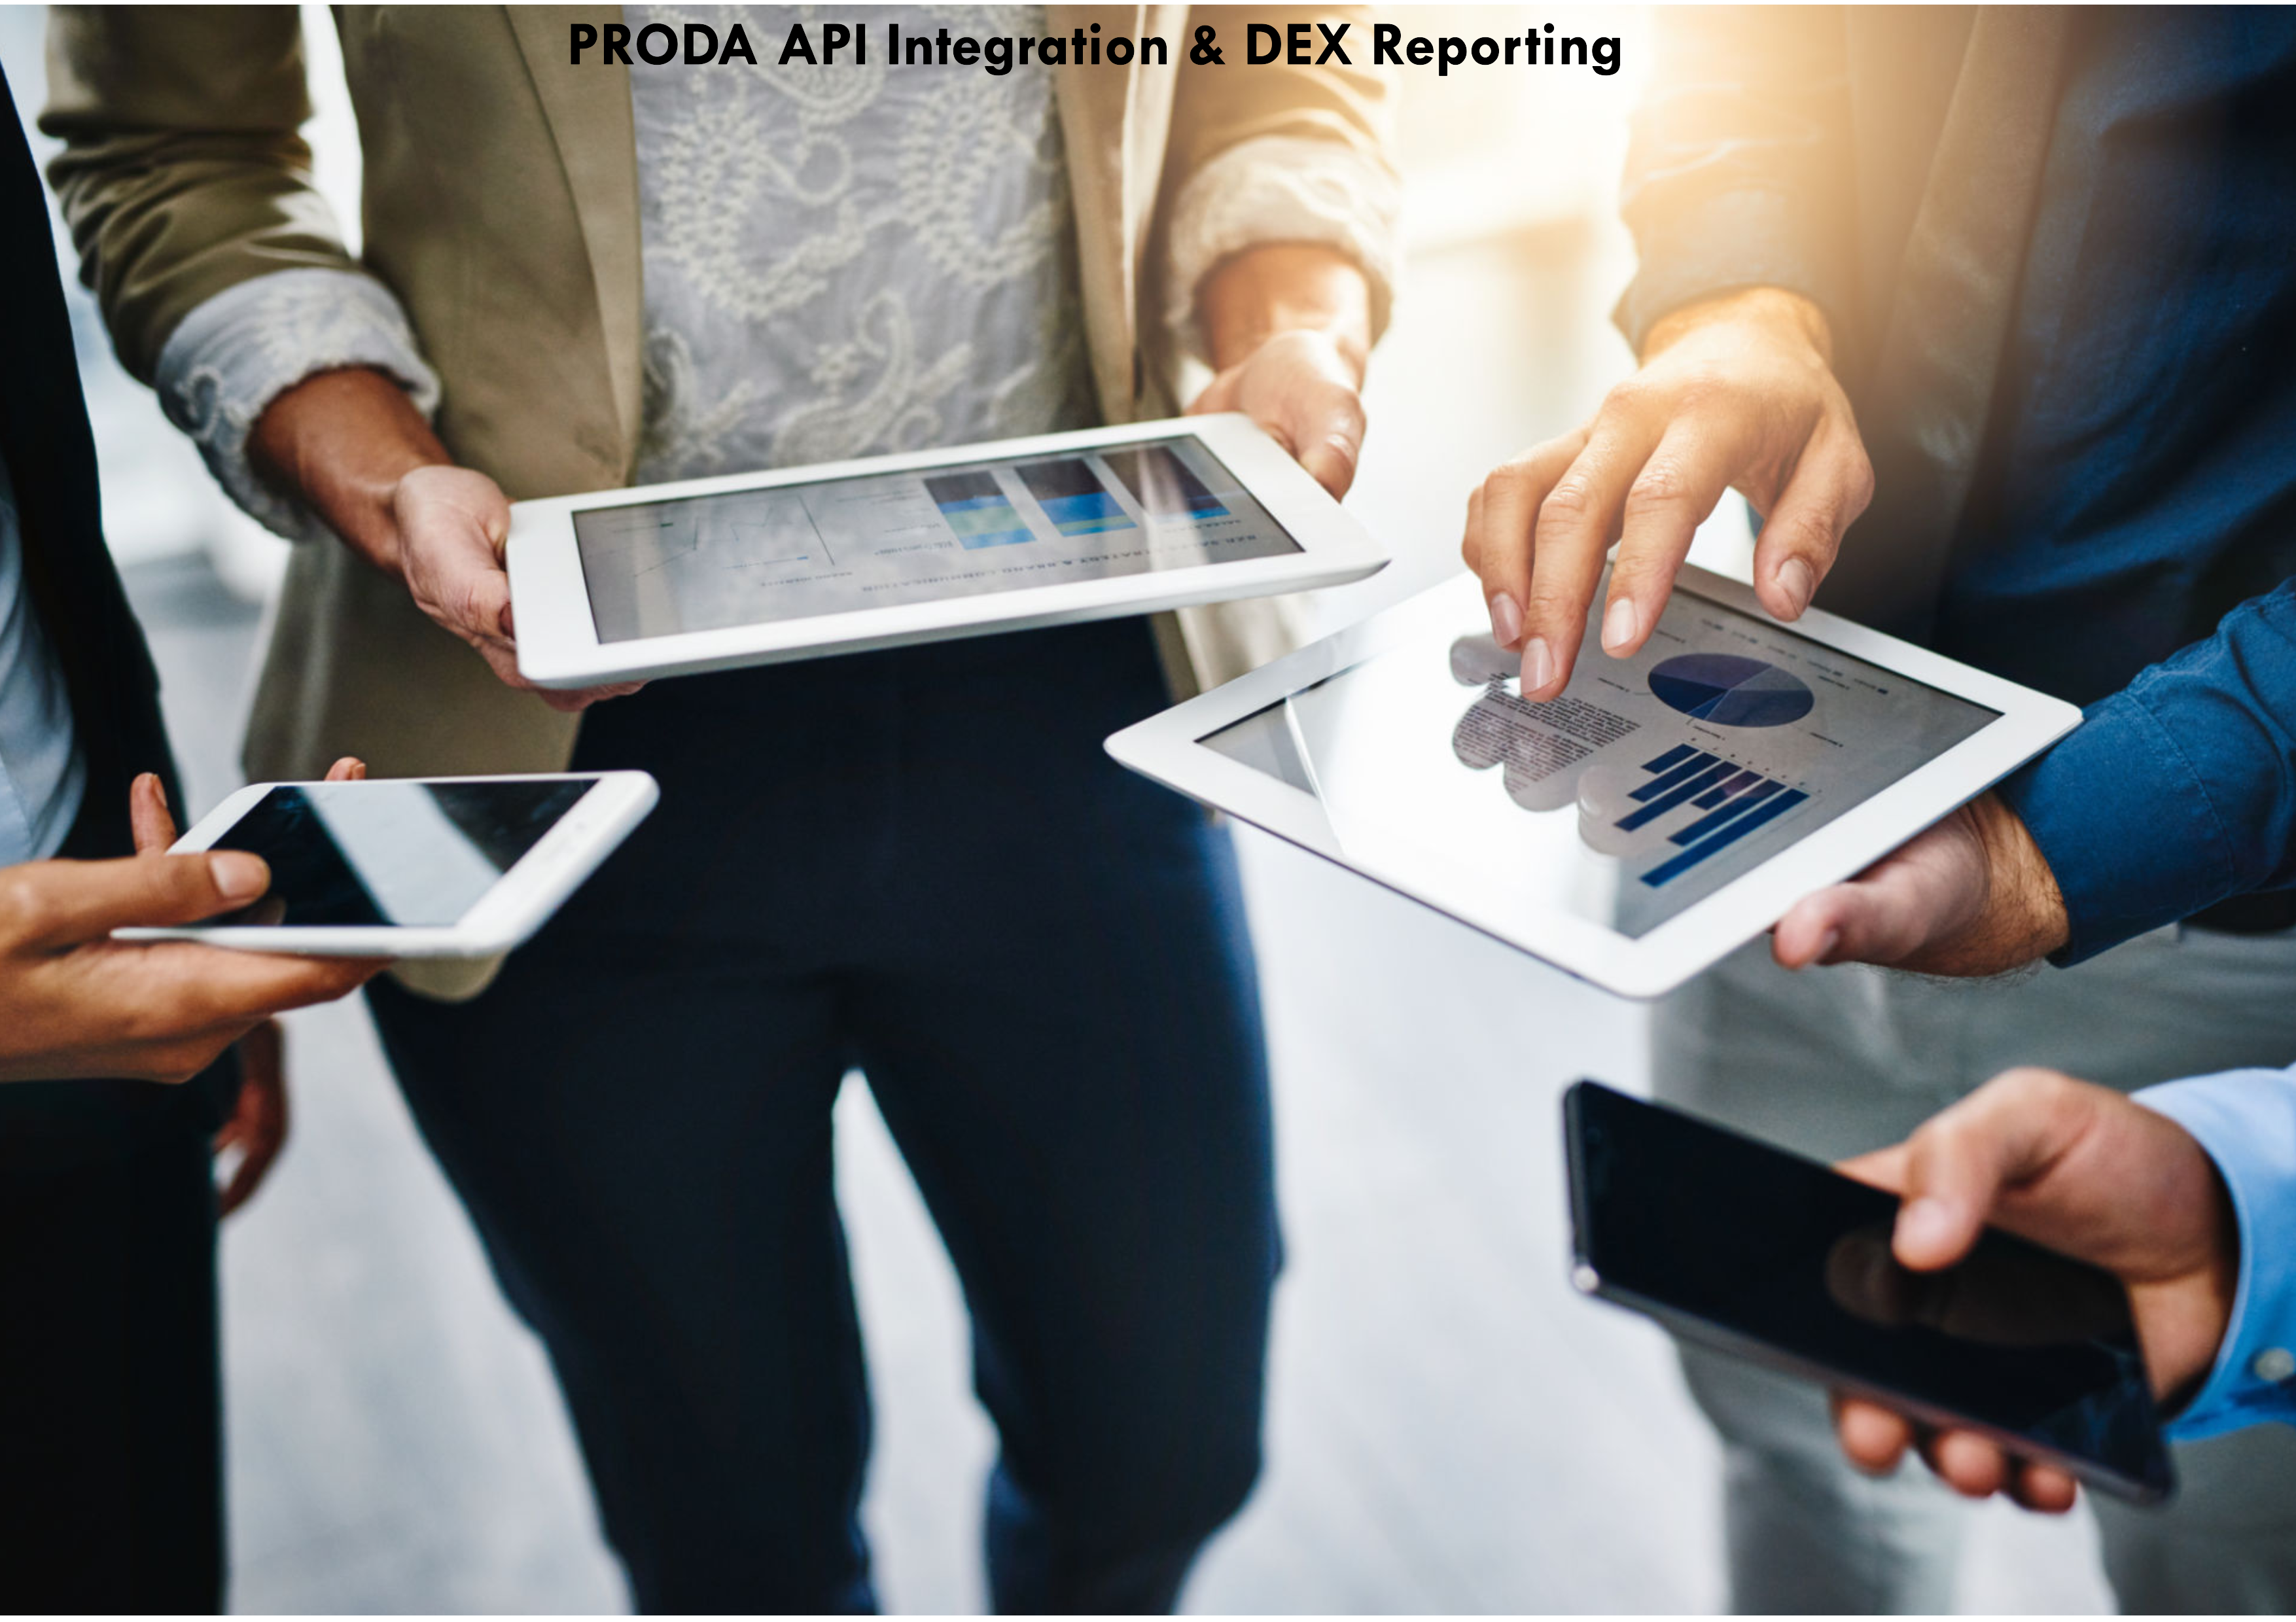 Aged Care Software Reporting & PRODA API Integration